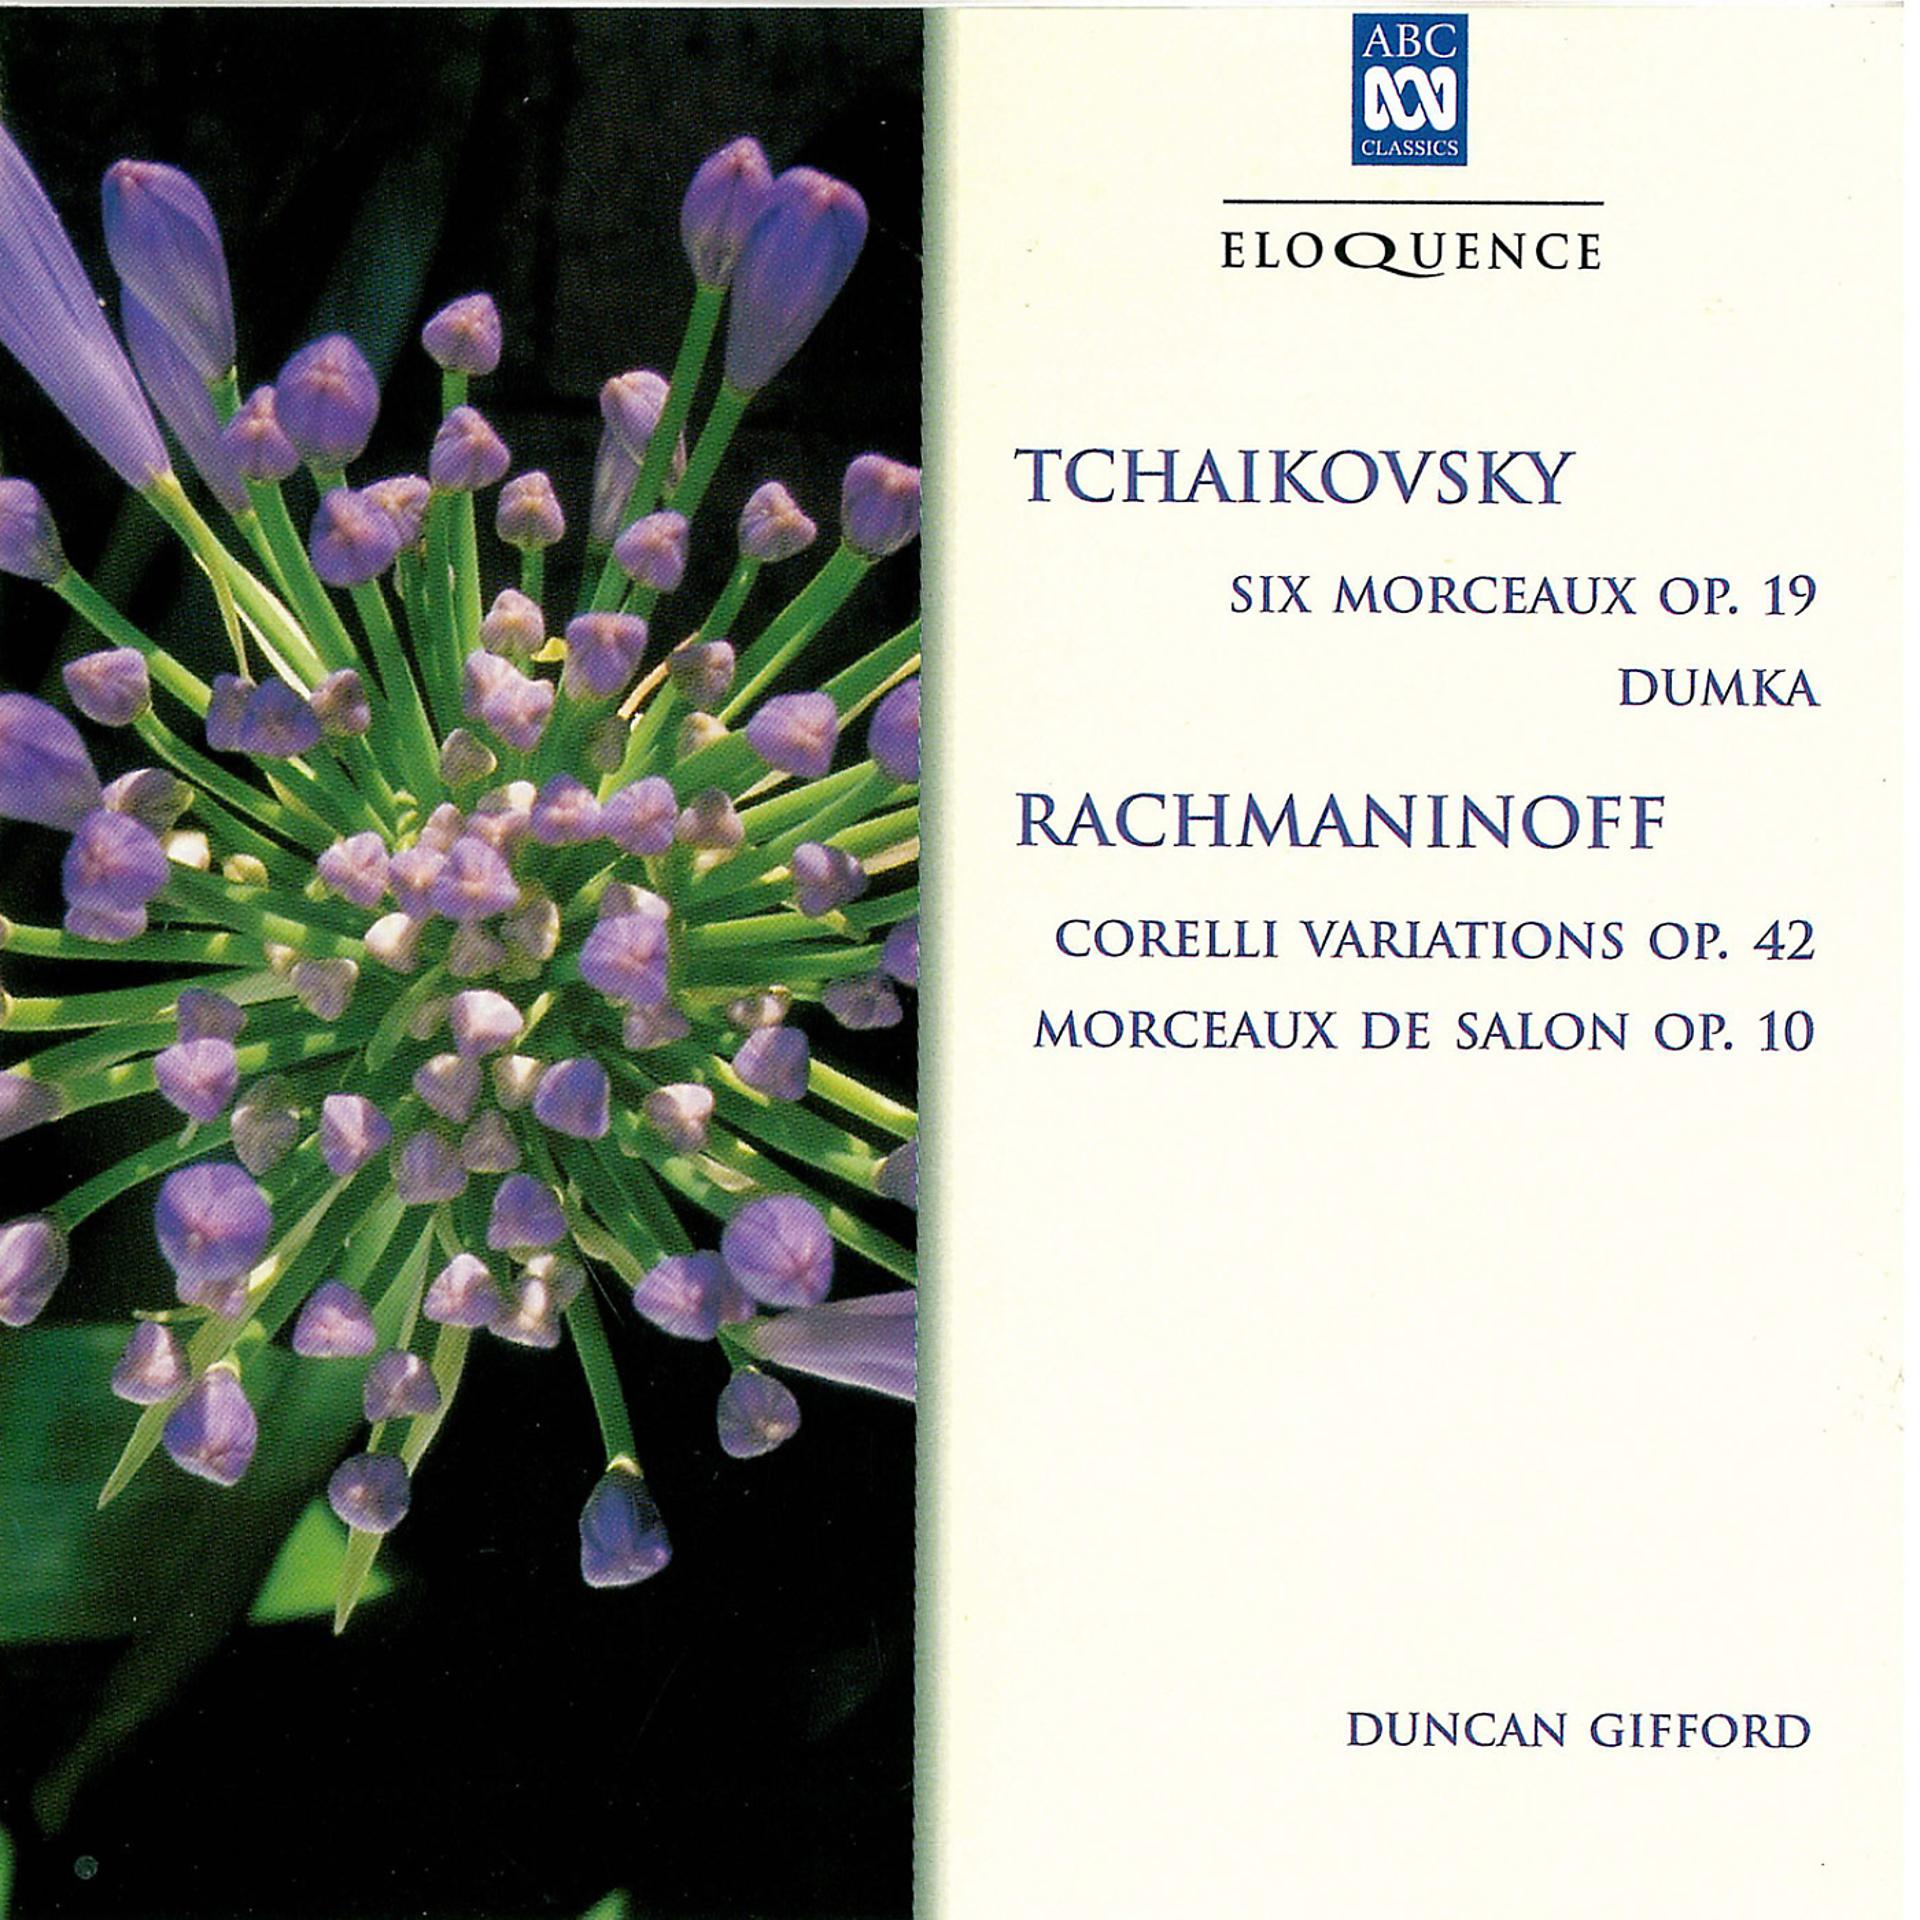 Постер альбома Tchaikovsky & Rachmaninoff: Russian Piano Music